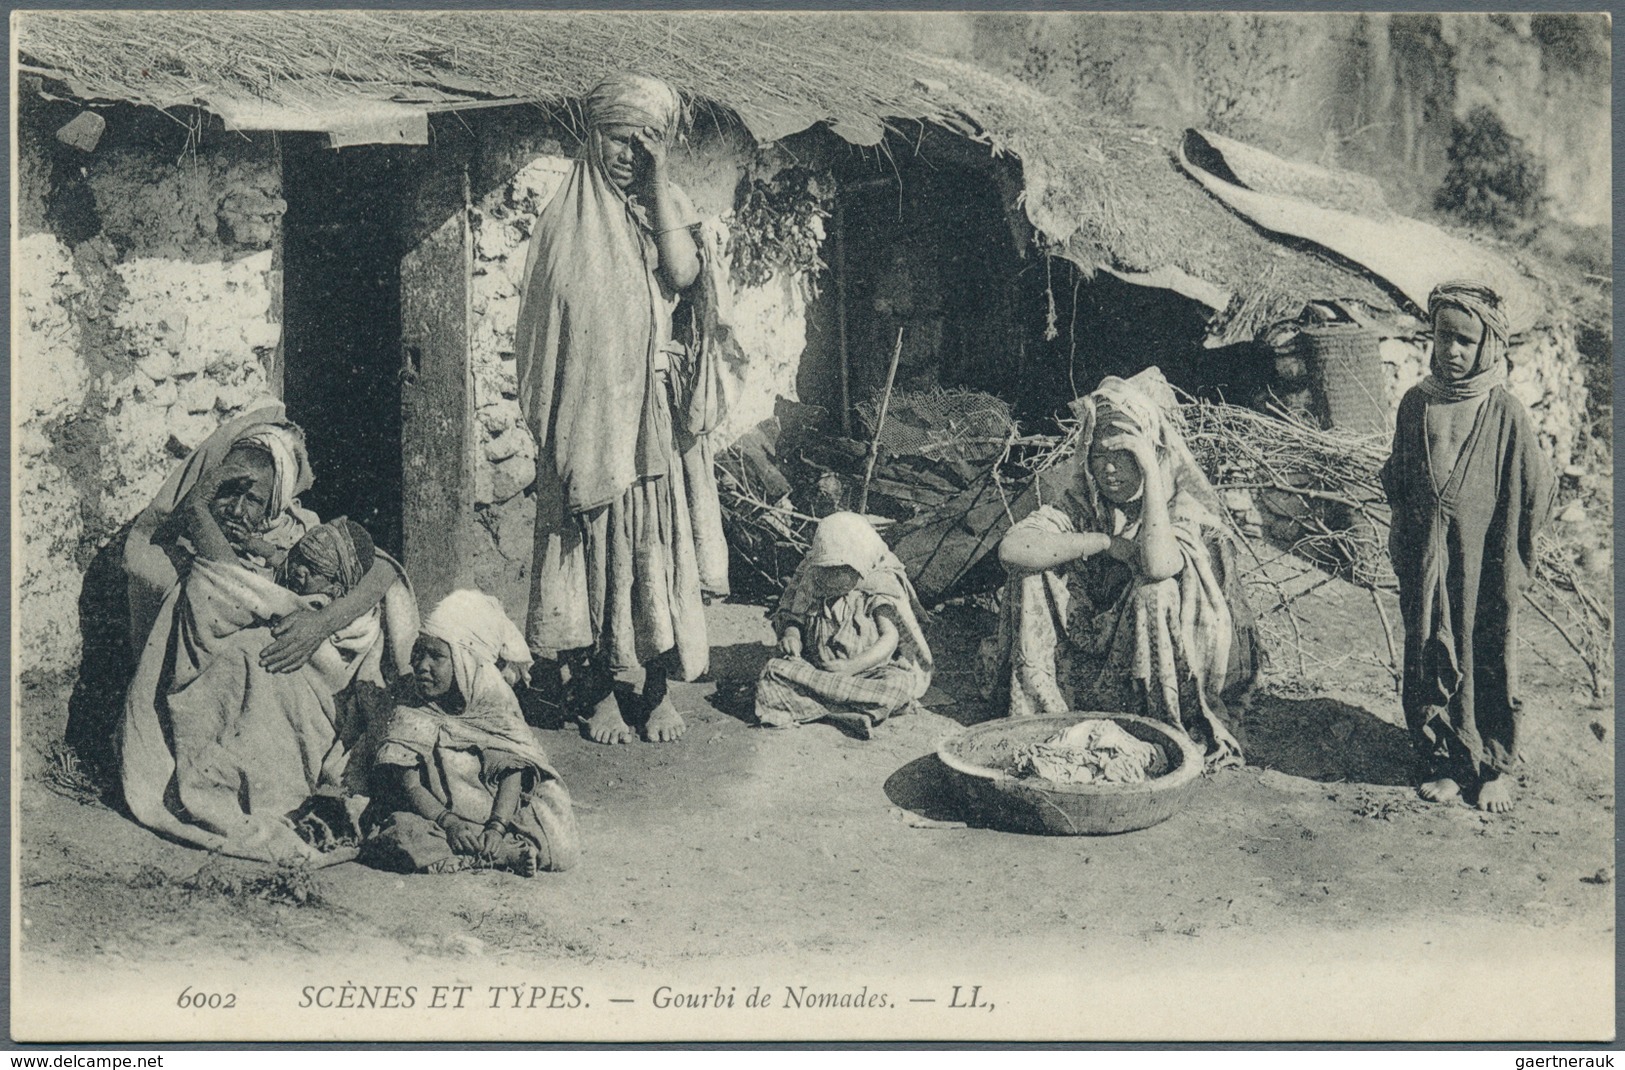 Türkei - Besonderheiten: 1905/1930, TÜRKEI mit dem Osmanischen Reich und den Ländern des Maghreb, fe